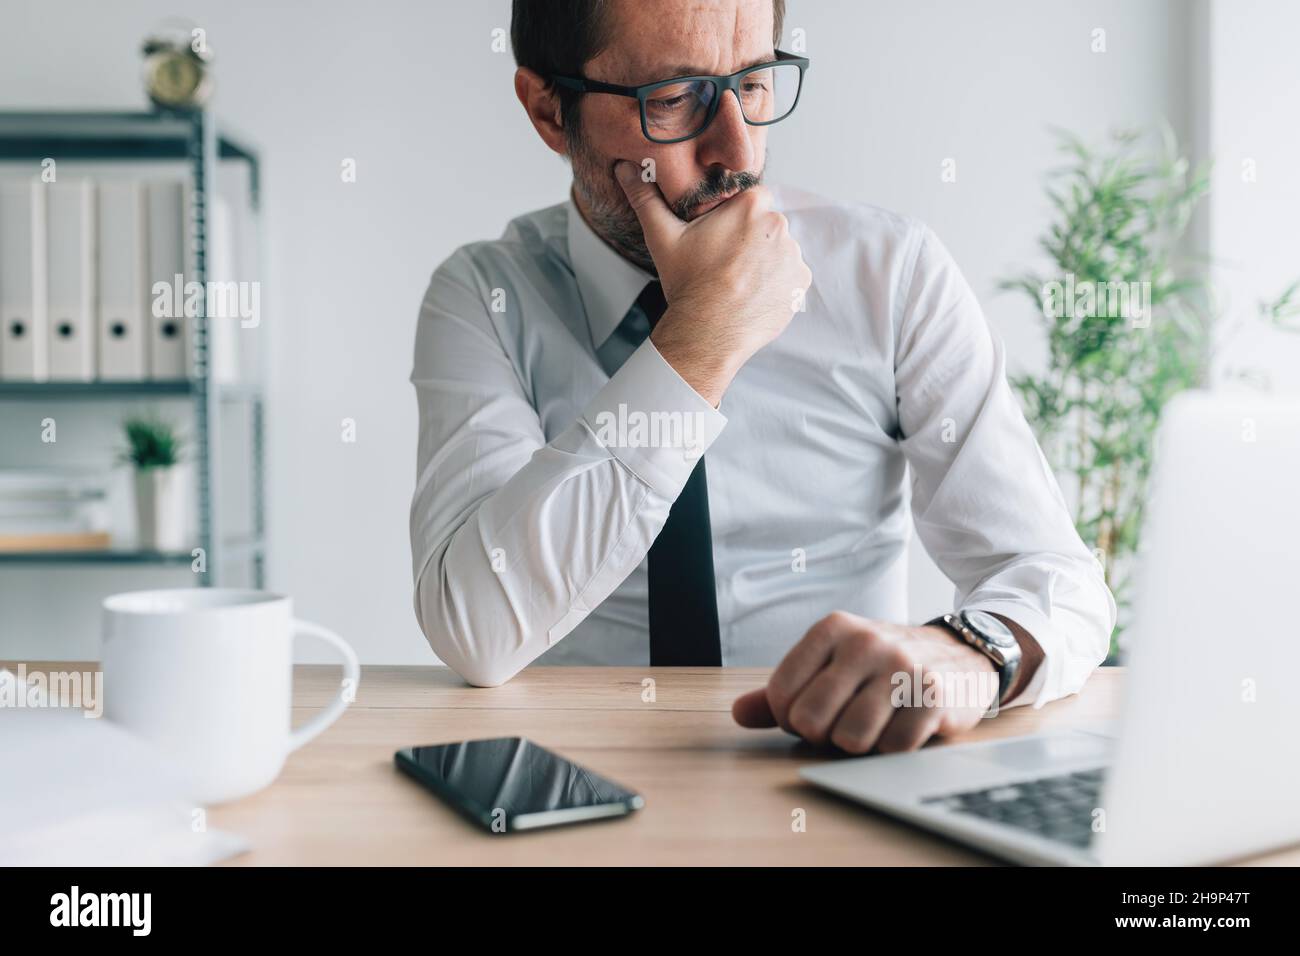 Uomo d'affari contemplativo caucasico che guarda lo schermo del computer portatile in ufficio d'affari con espressione facciale perplessa, ritratto di entr premuroso Foto Stock